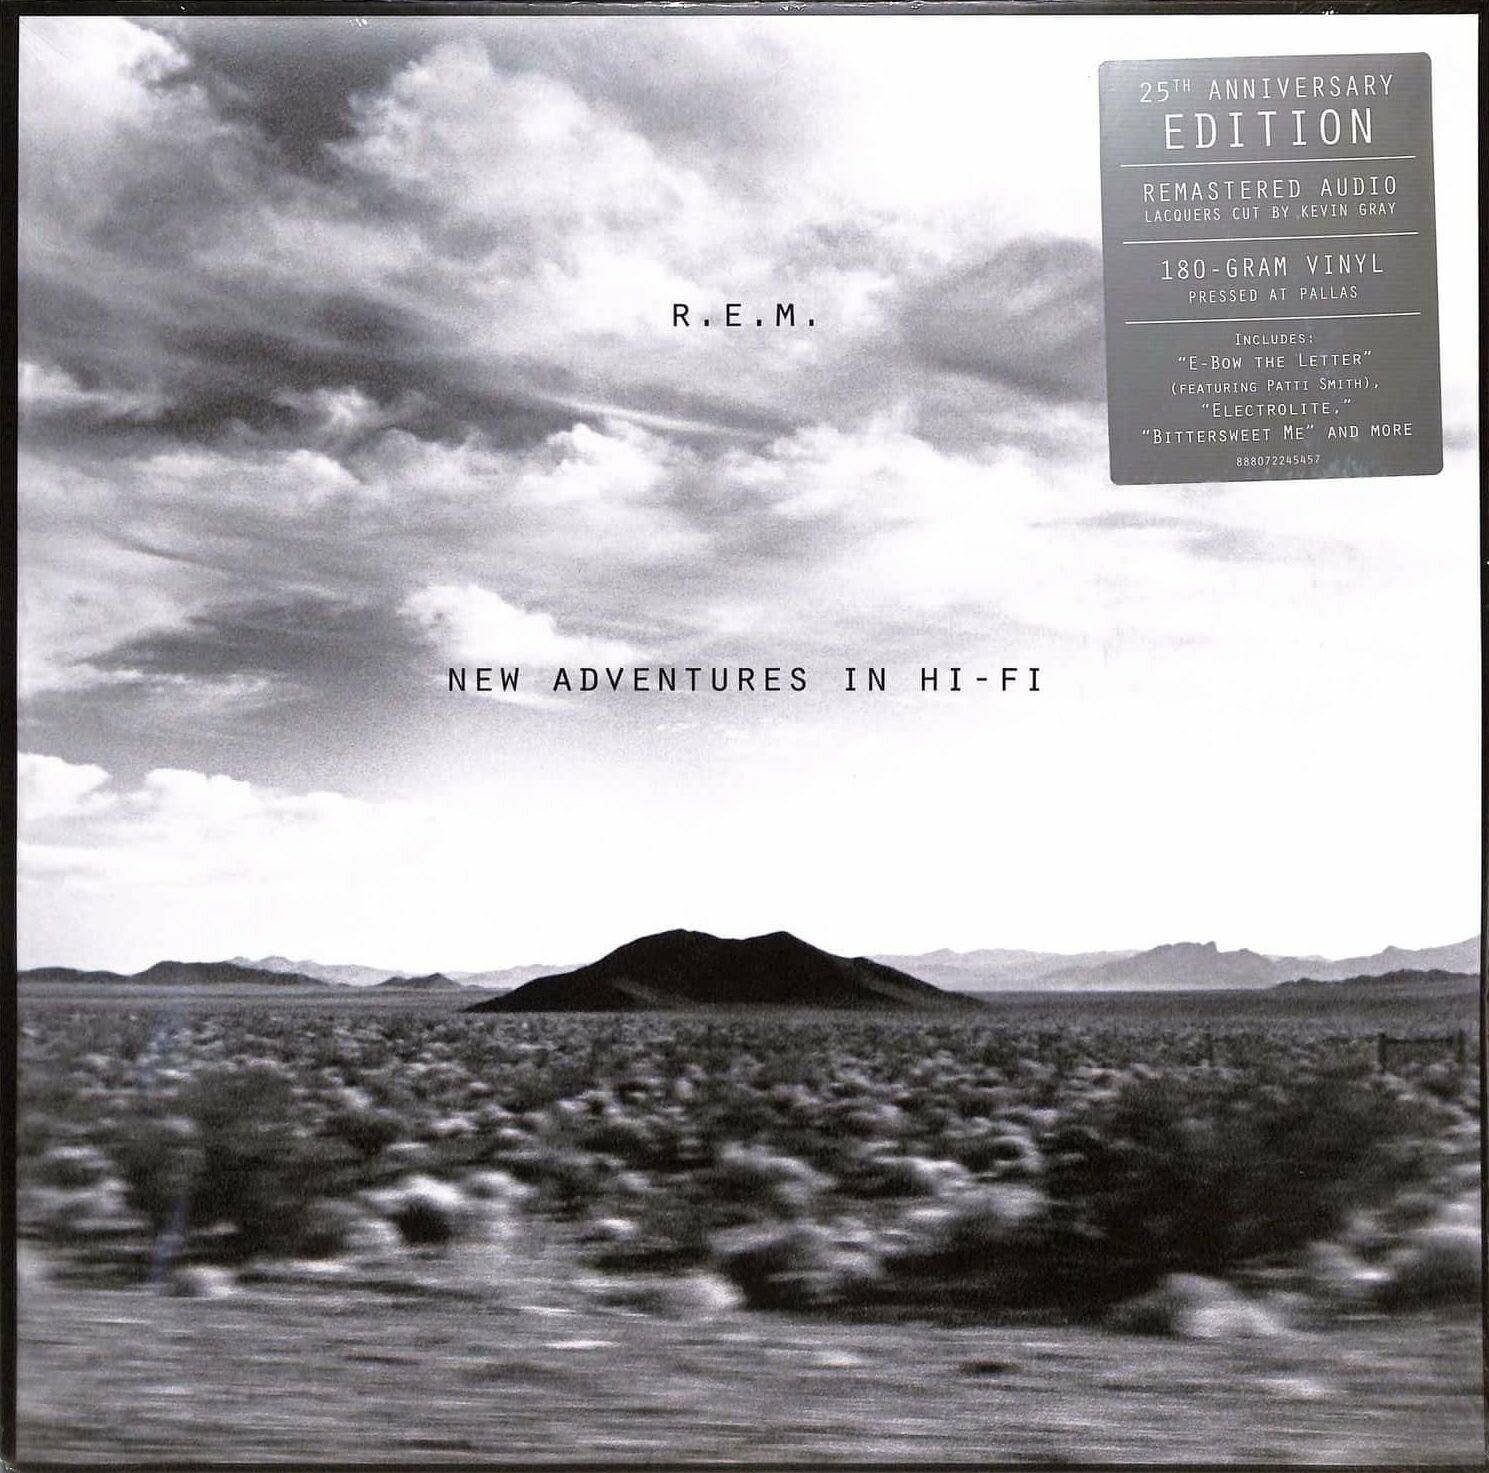 R.E.M. – New Adventures In Hi-Fi (25th Anniversary Edition)